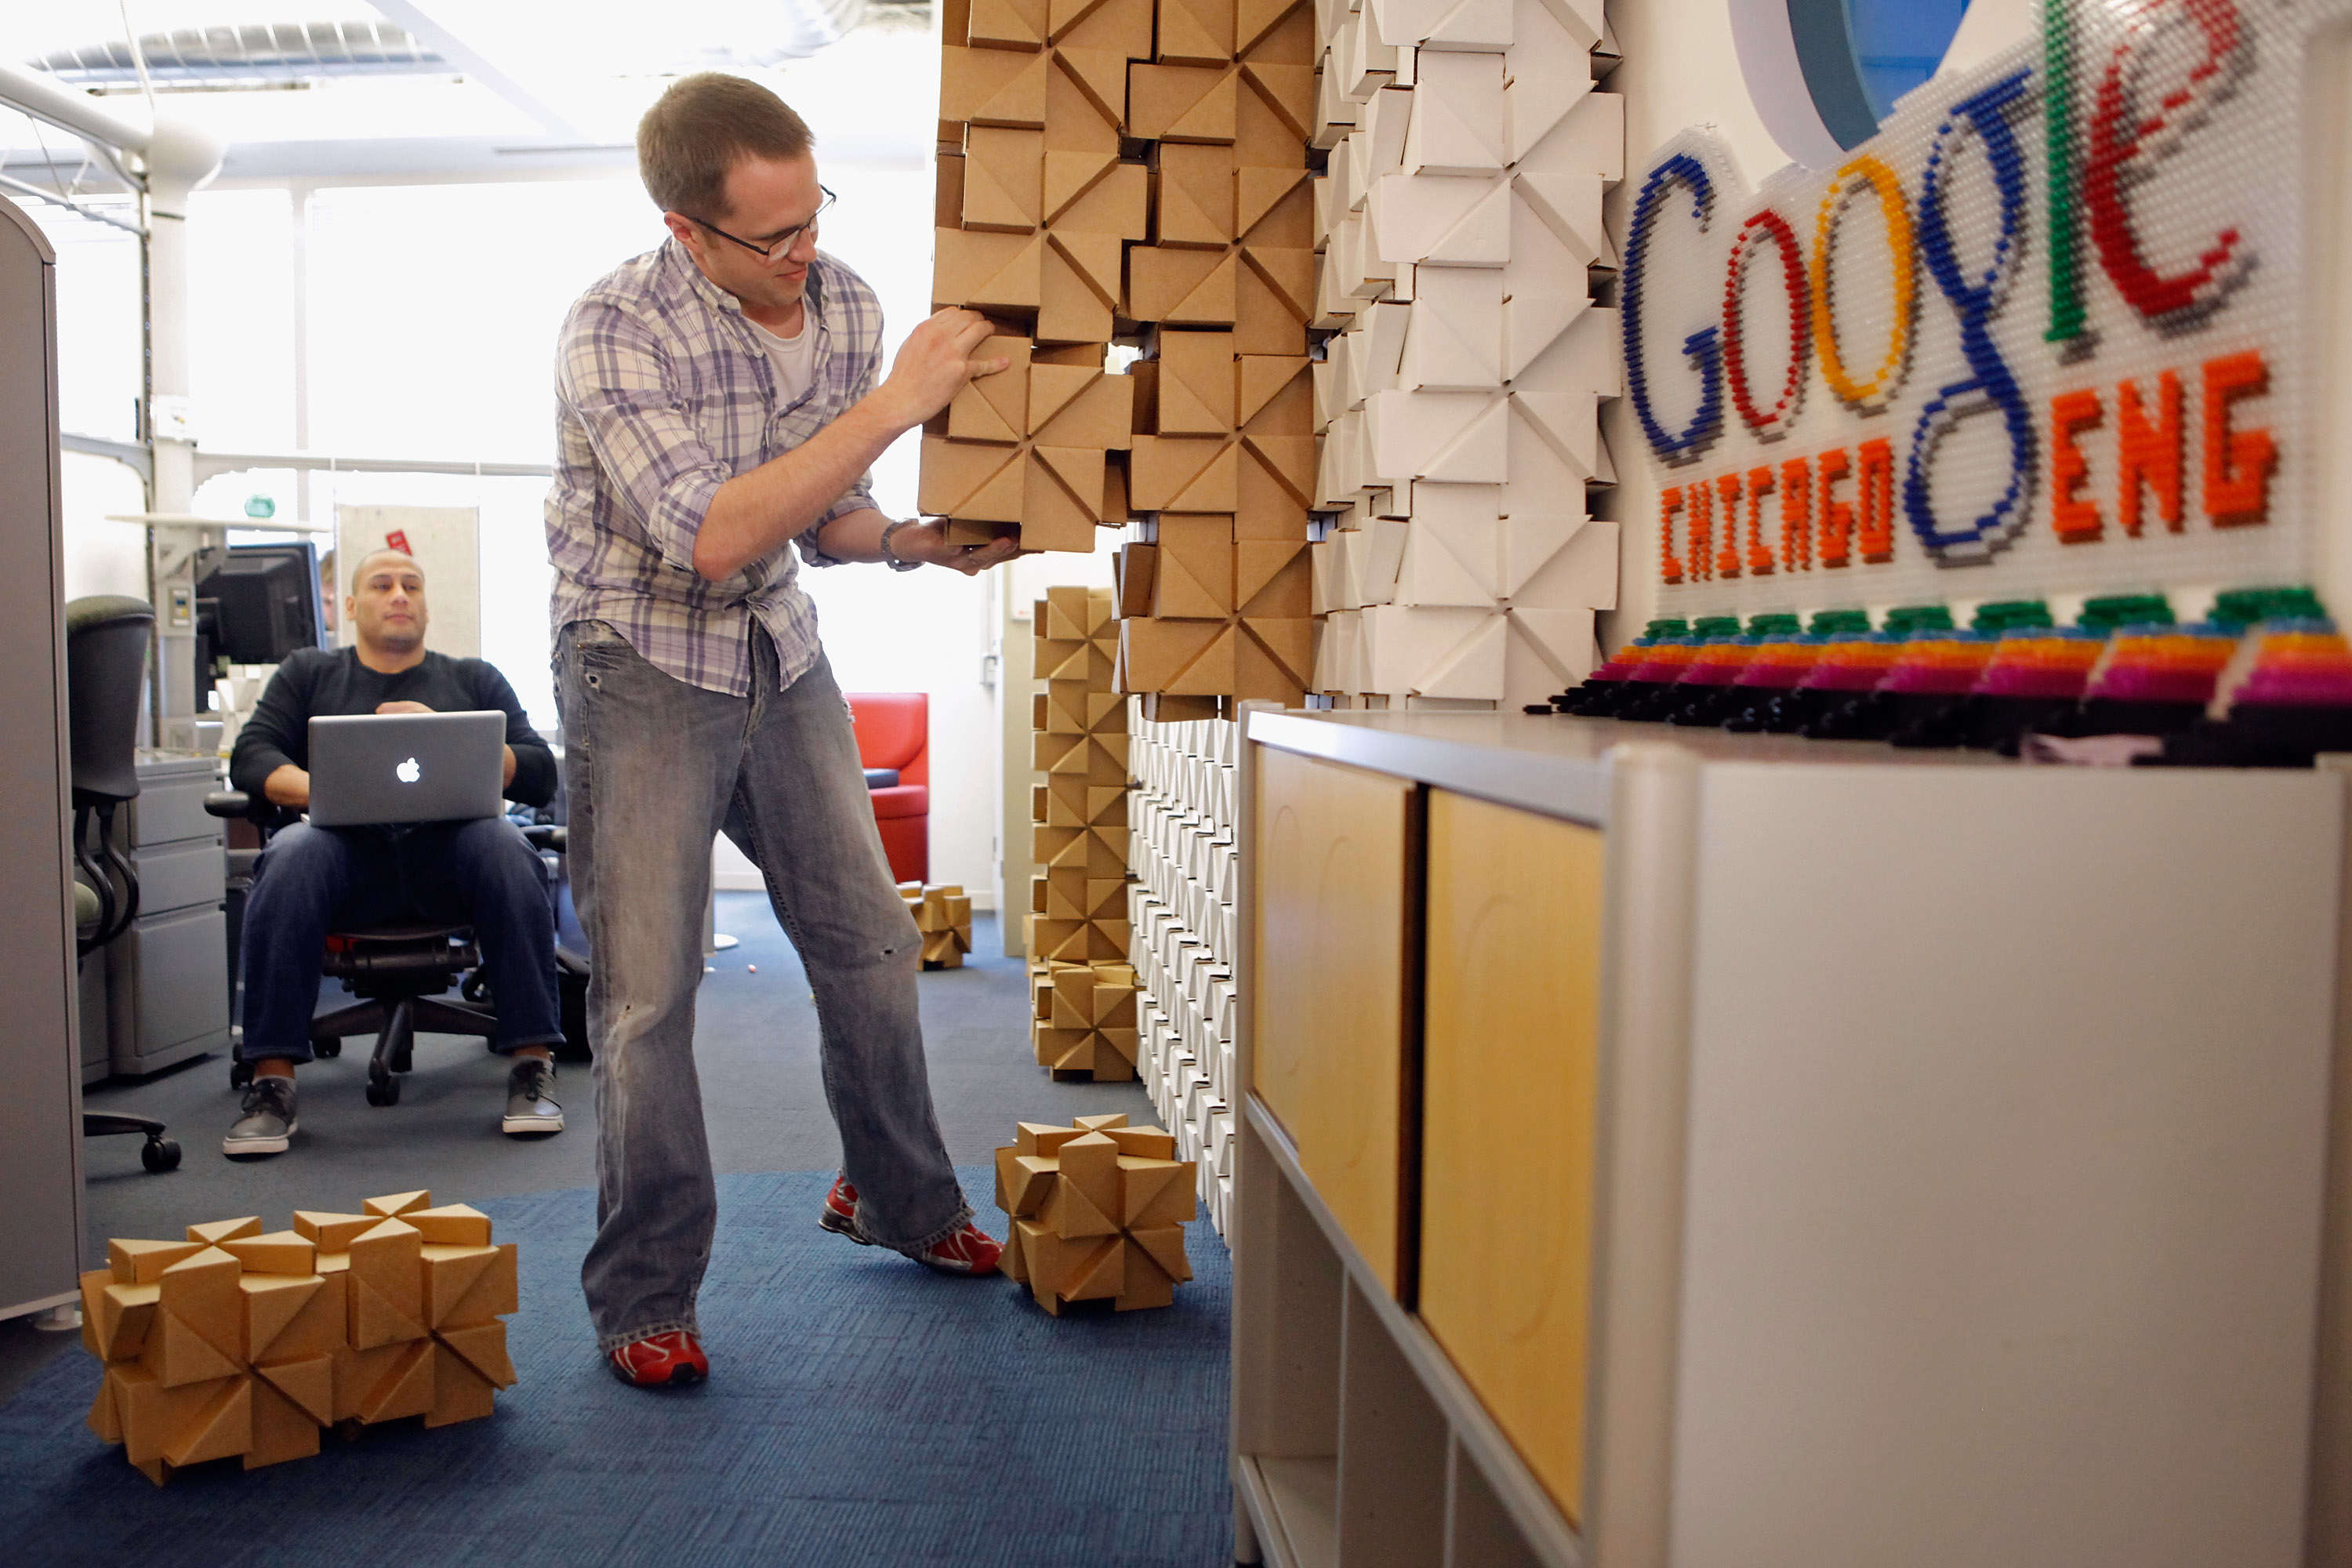 Lots add. Офис гугл. Офисы гугл в мире. Праздник в офисе гугл. Стена собираемая в гугл офисе.